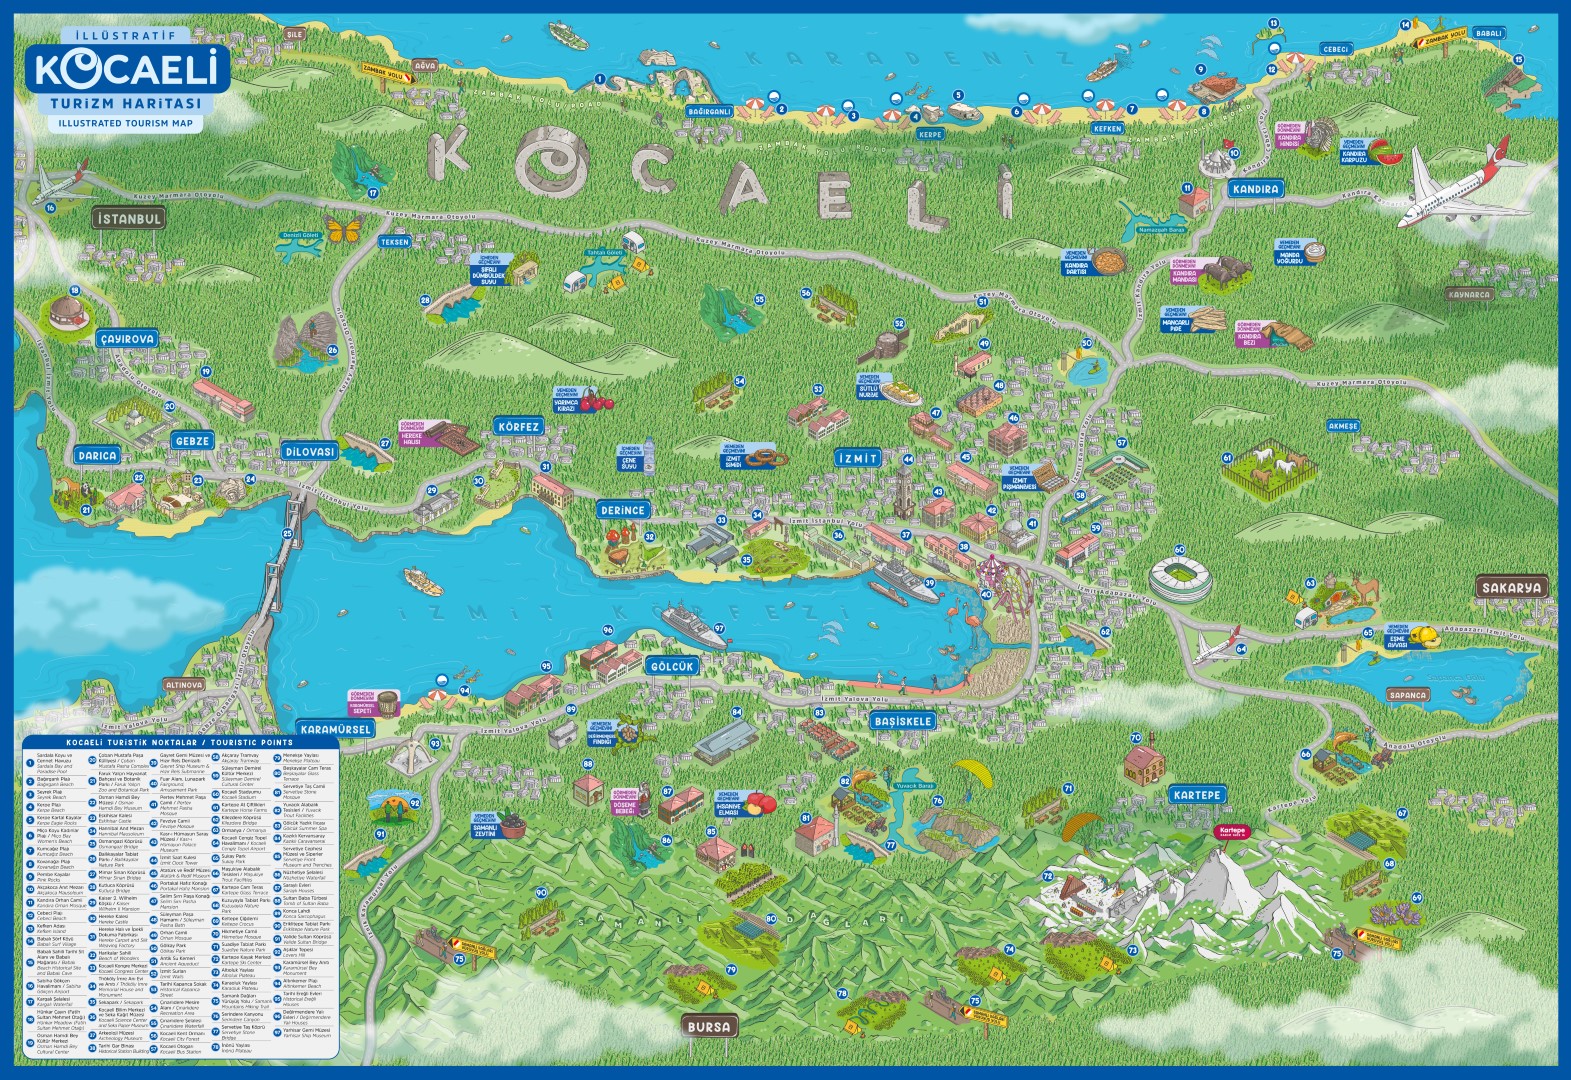 kocaeli-turizm-haritasi-gorucuye-cikti-1-large.jpg